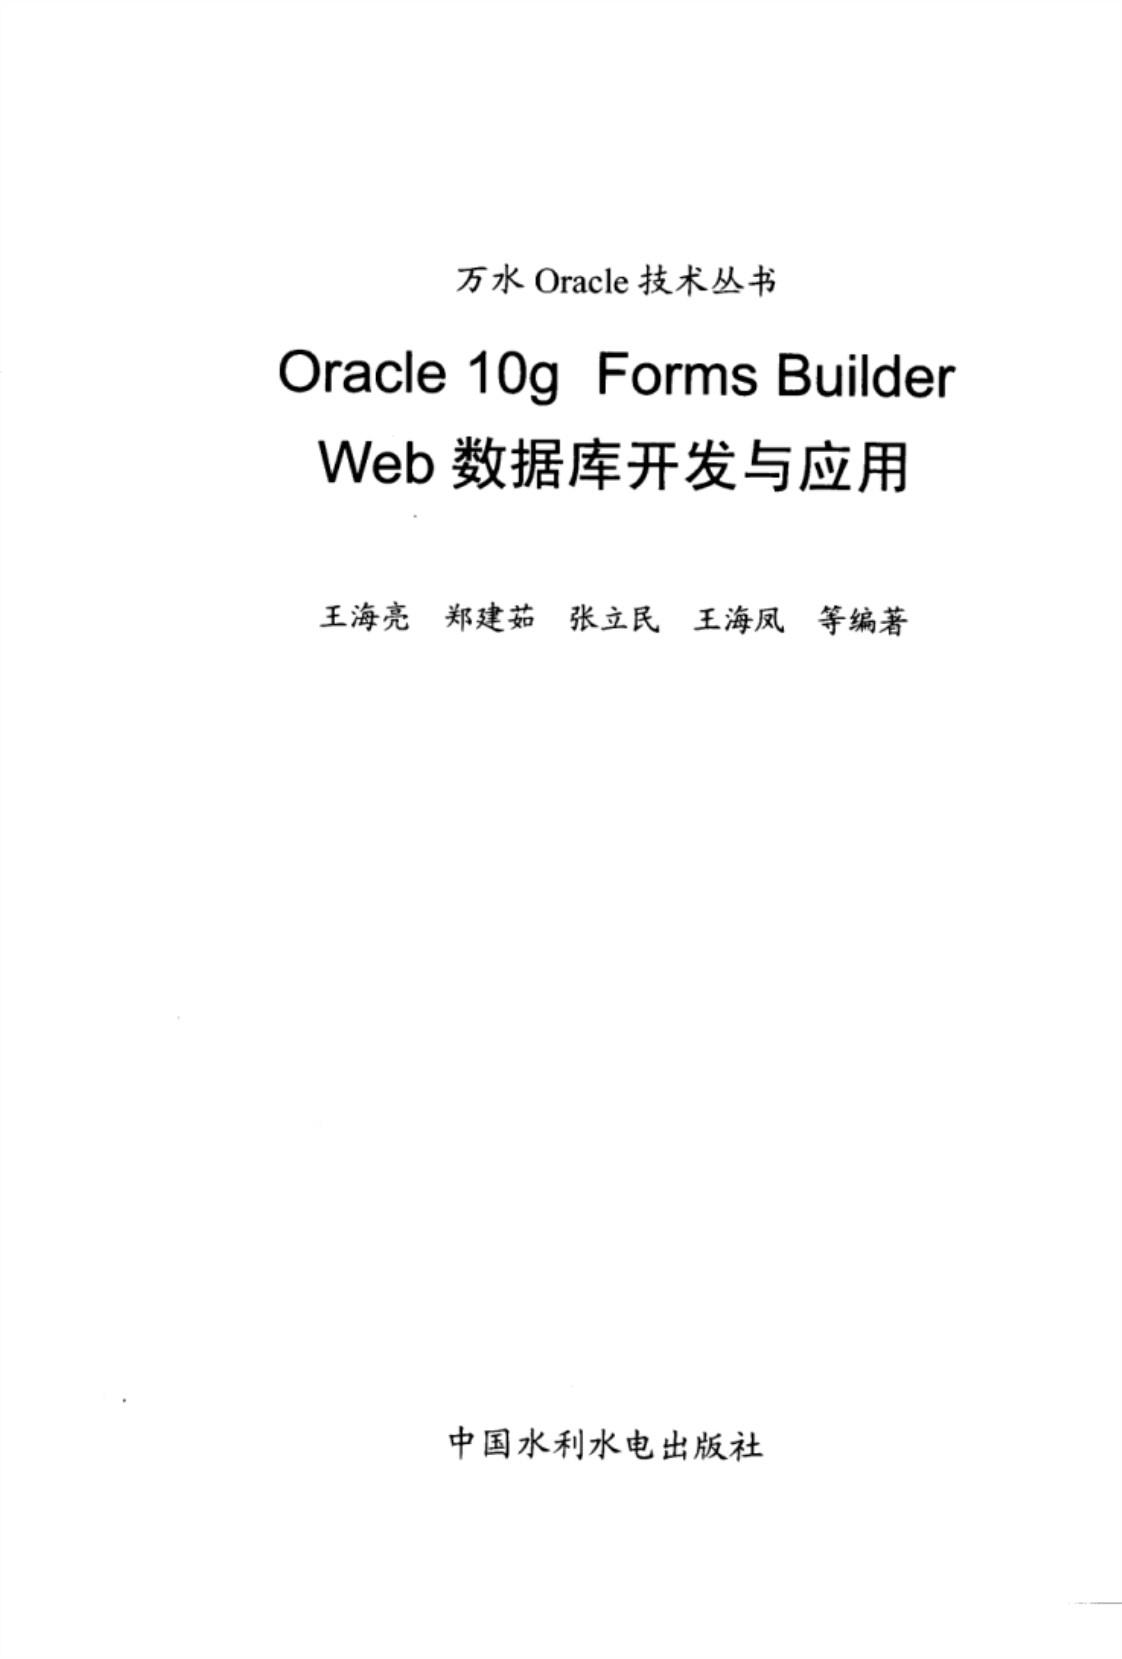 [Oracle、10g、Forms、Builder、Web数据库开发与应用][王海亮、郑建茹、张立民、王海凤（编著）(著)]高清PDF电子书